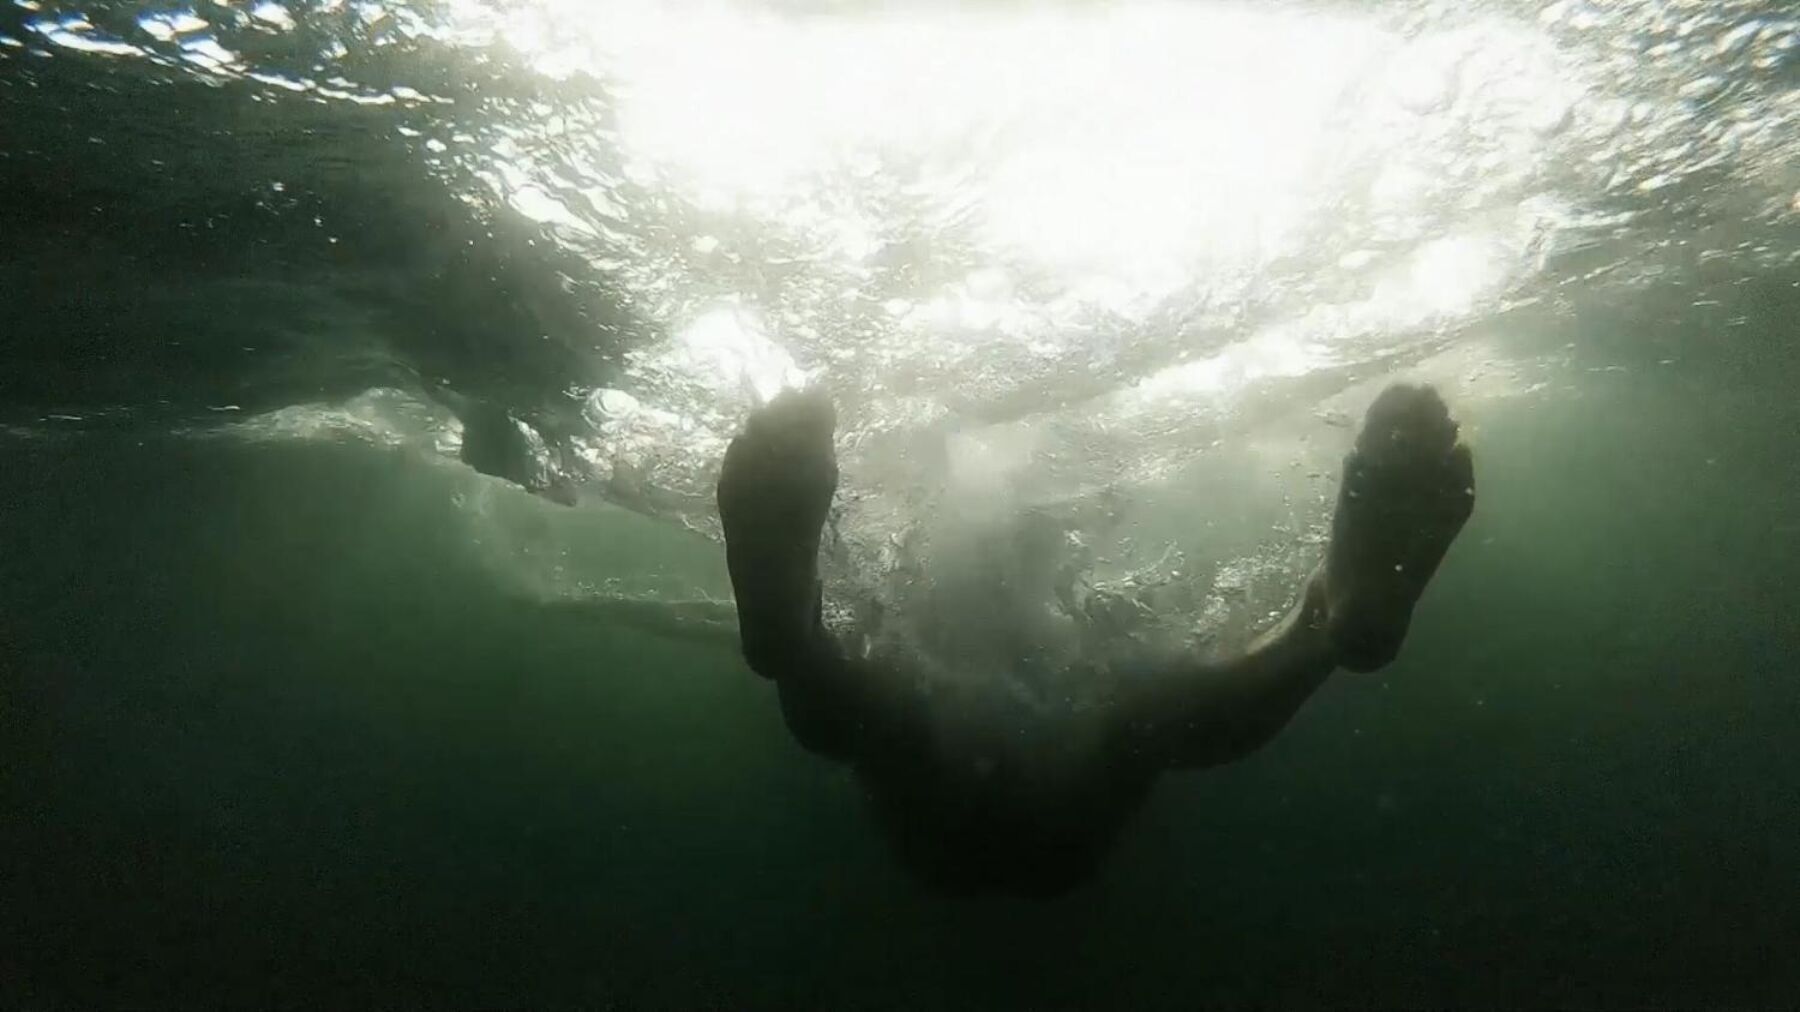 Person liggende i vann, tatt under ifra, med sol som skinner gjennom vannet. Stillbilde.